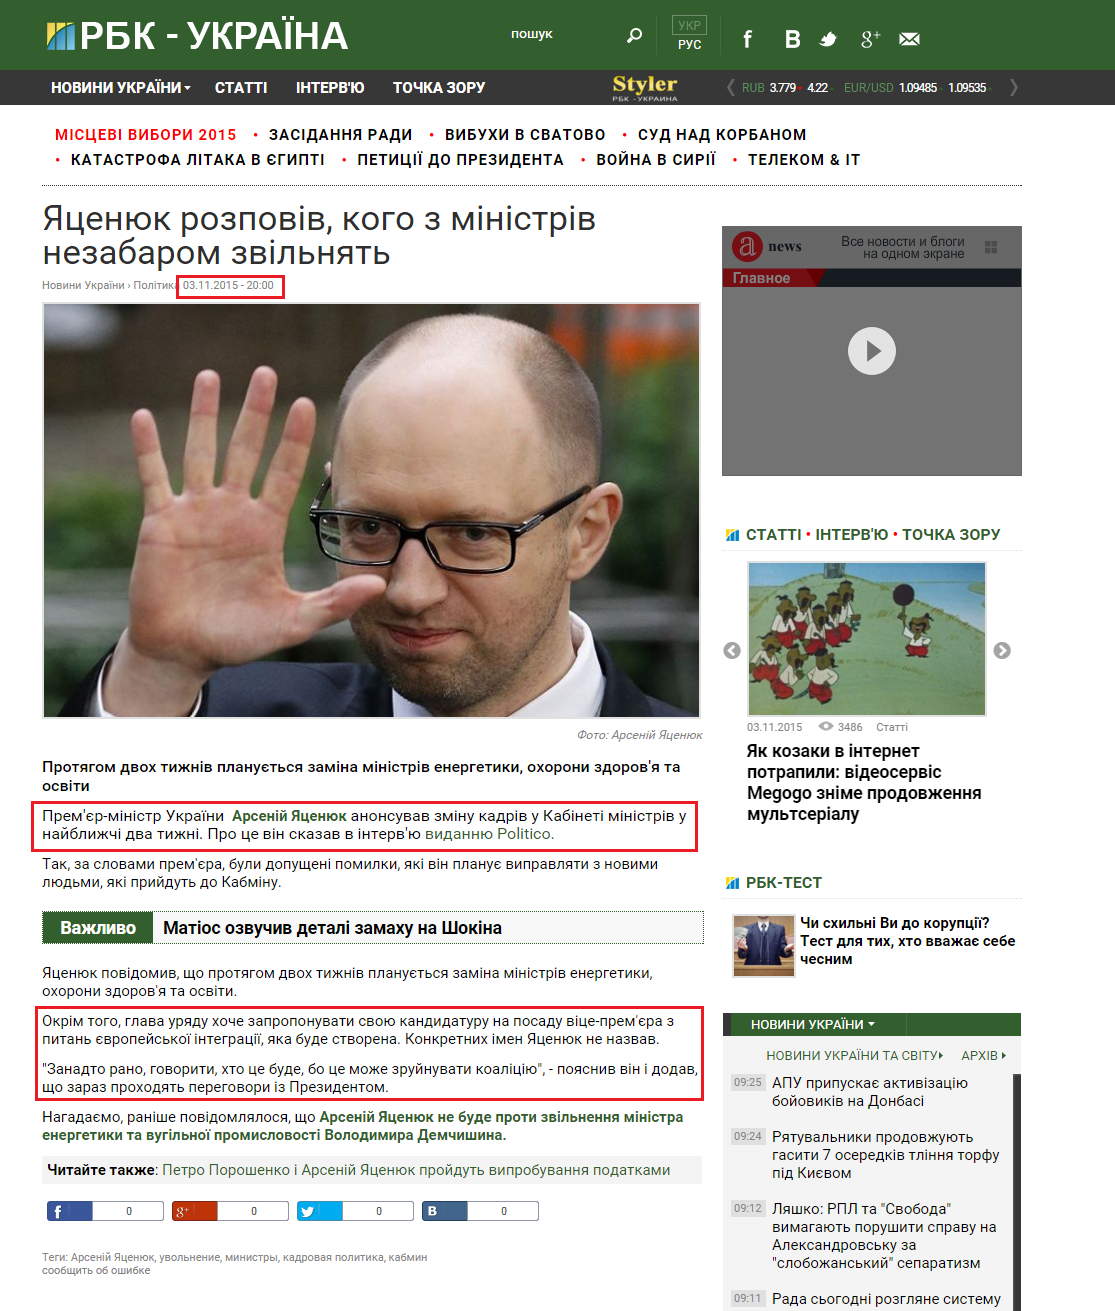 http://www.rbc.ua/ukr/news/tsenyuk-rasskazal-kogo-ministrov-mogut-vskore-1446573492.html